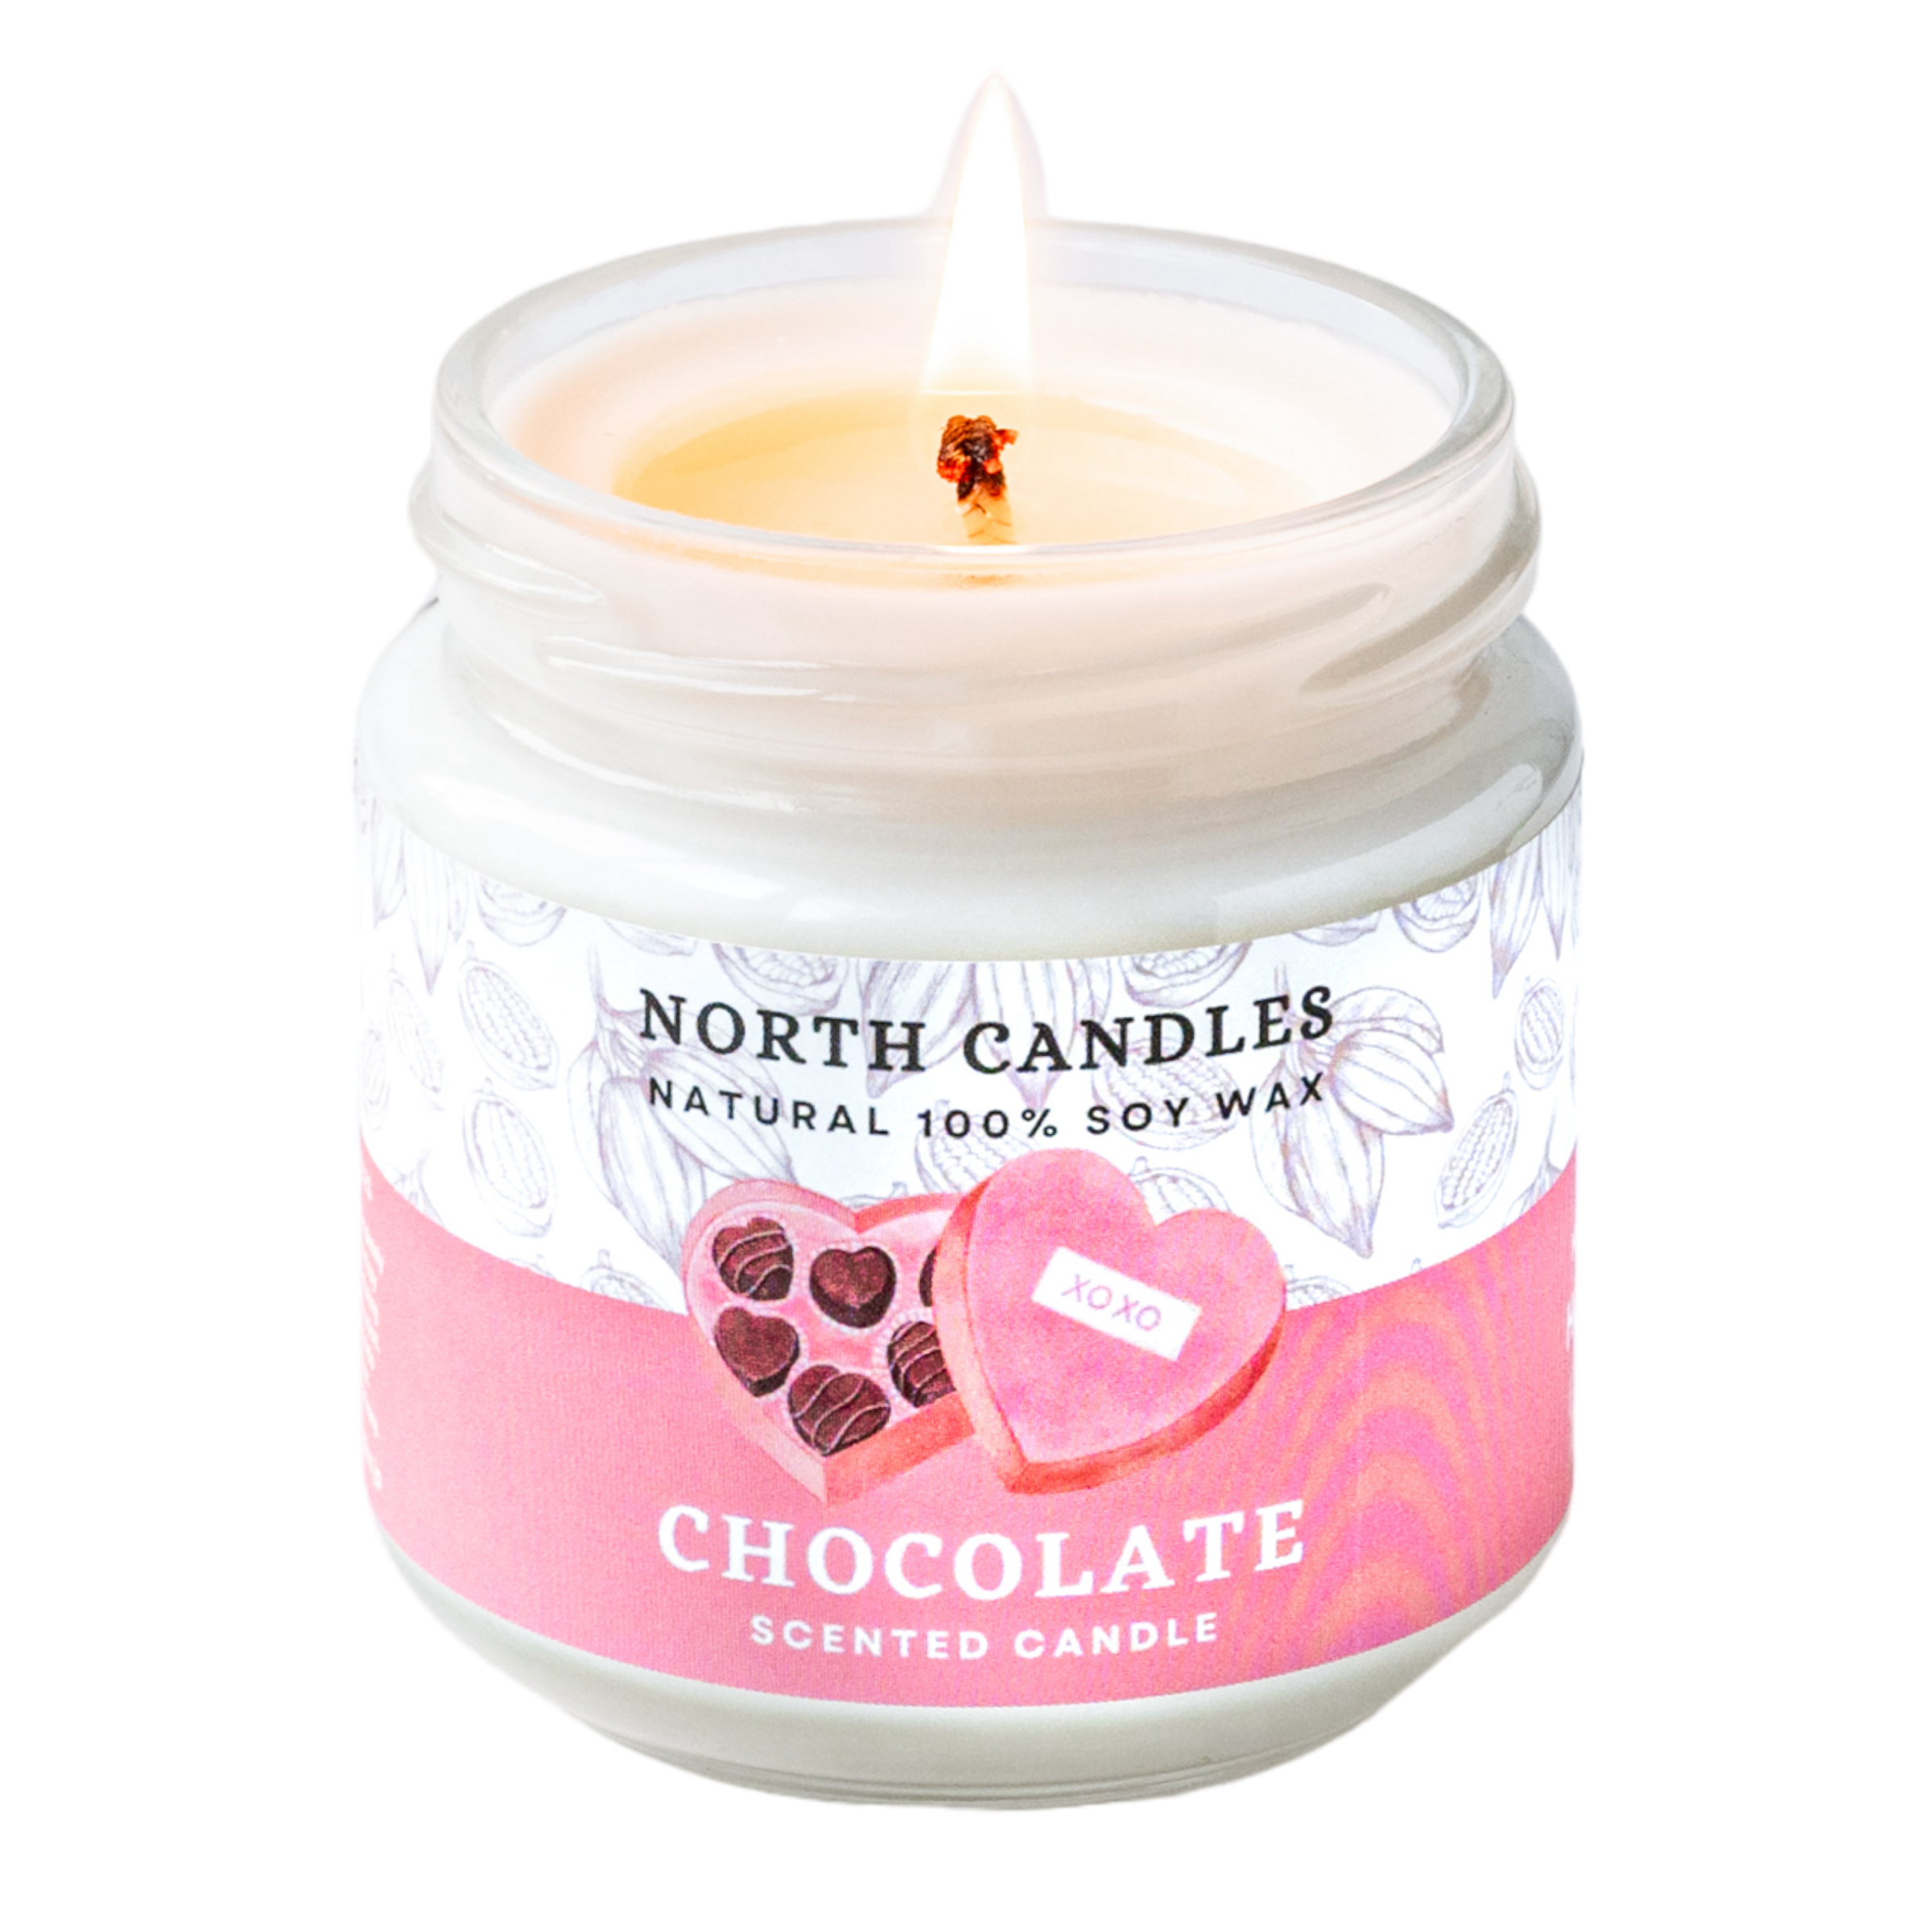 季節限定 チョコレートビンキャンドル (SAVE 20-30%) – North Candles